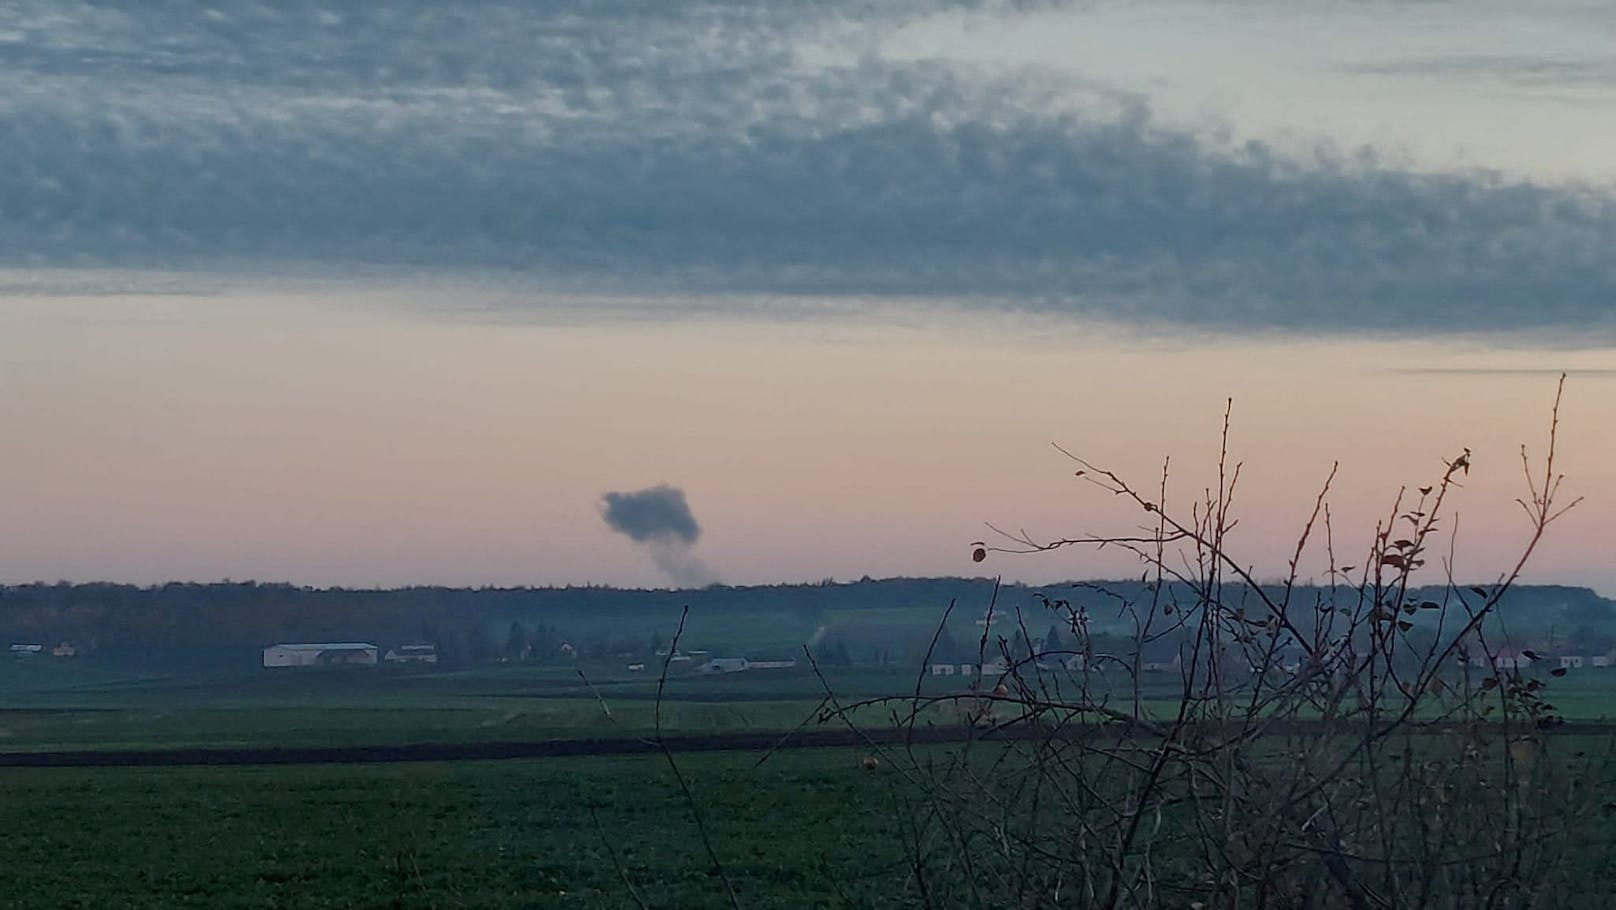 Augenzeugen aus dem Bezirk Hrubieszów berichten, dass sie kurz vor der Explosion "ein seltsames Objekt am Himmel schnell zu Boden fallen" gesehen hätten.